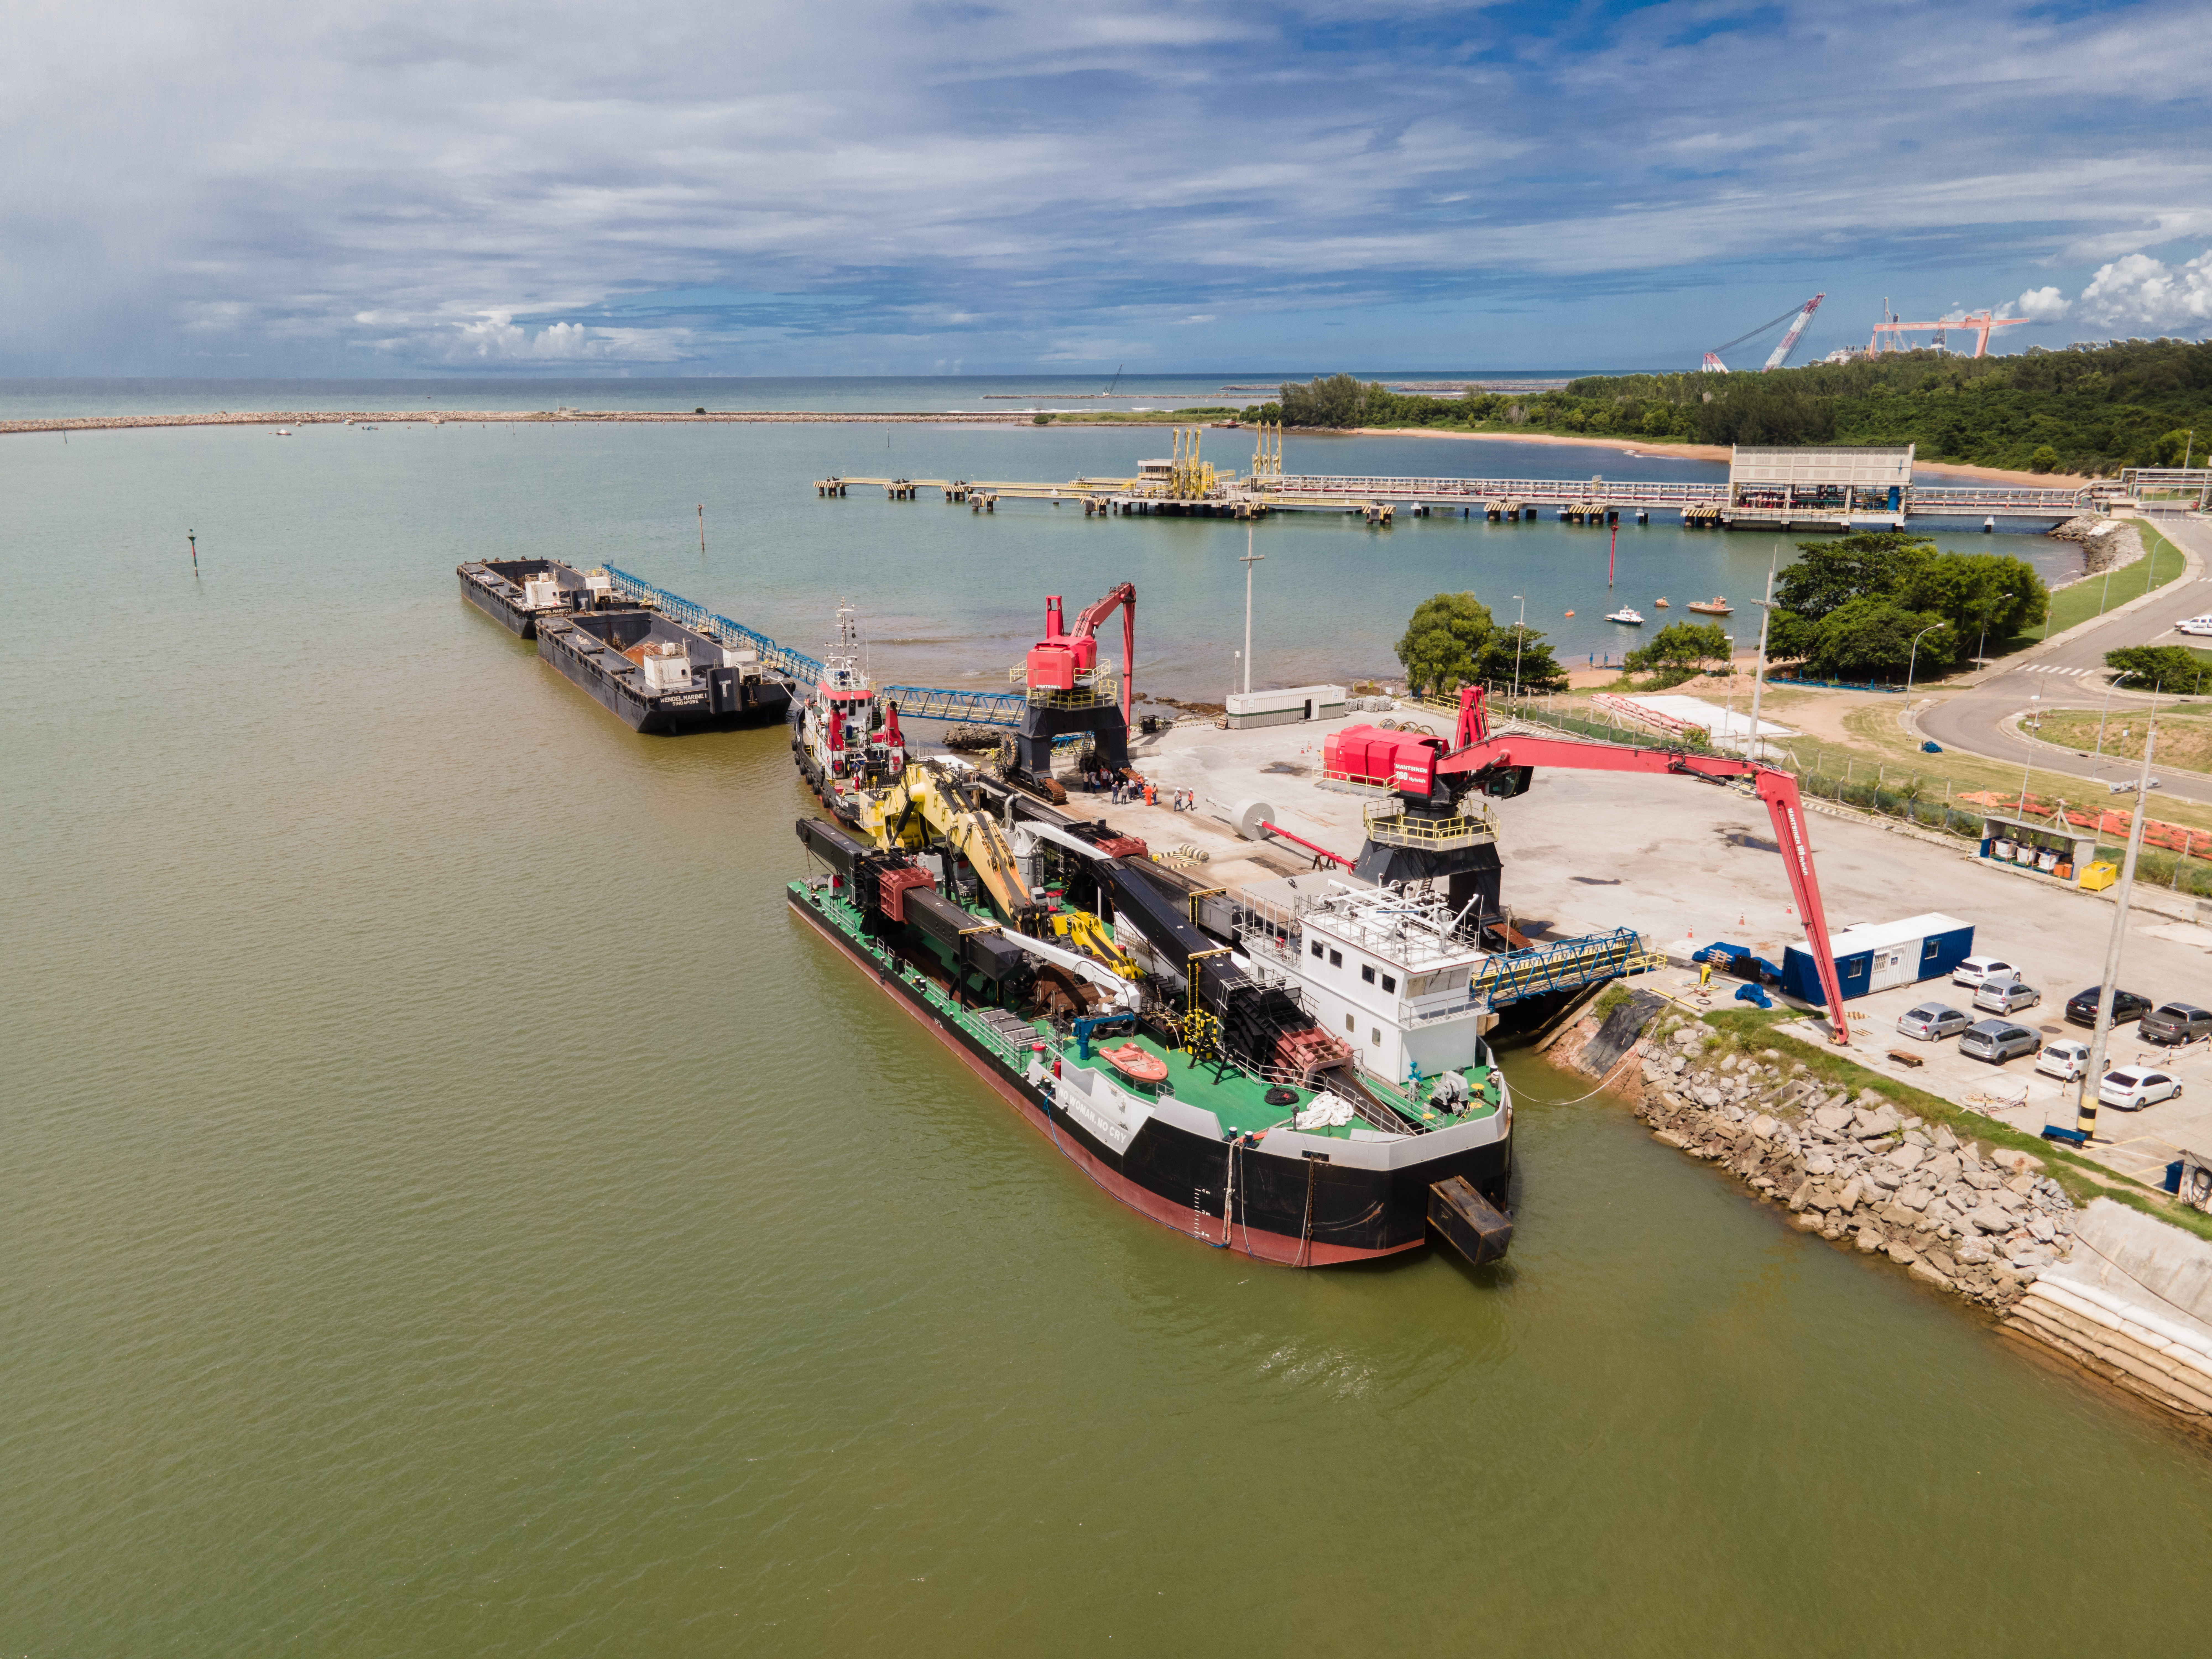 Equipamento é um dos maiores do mundo e está em Aracruz para uma grande operação de dragagem. Ele já foi utilizado nos portos de Santos (SP) e Itaqui (MA)